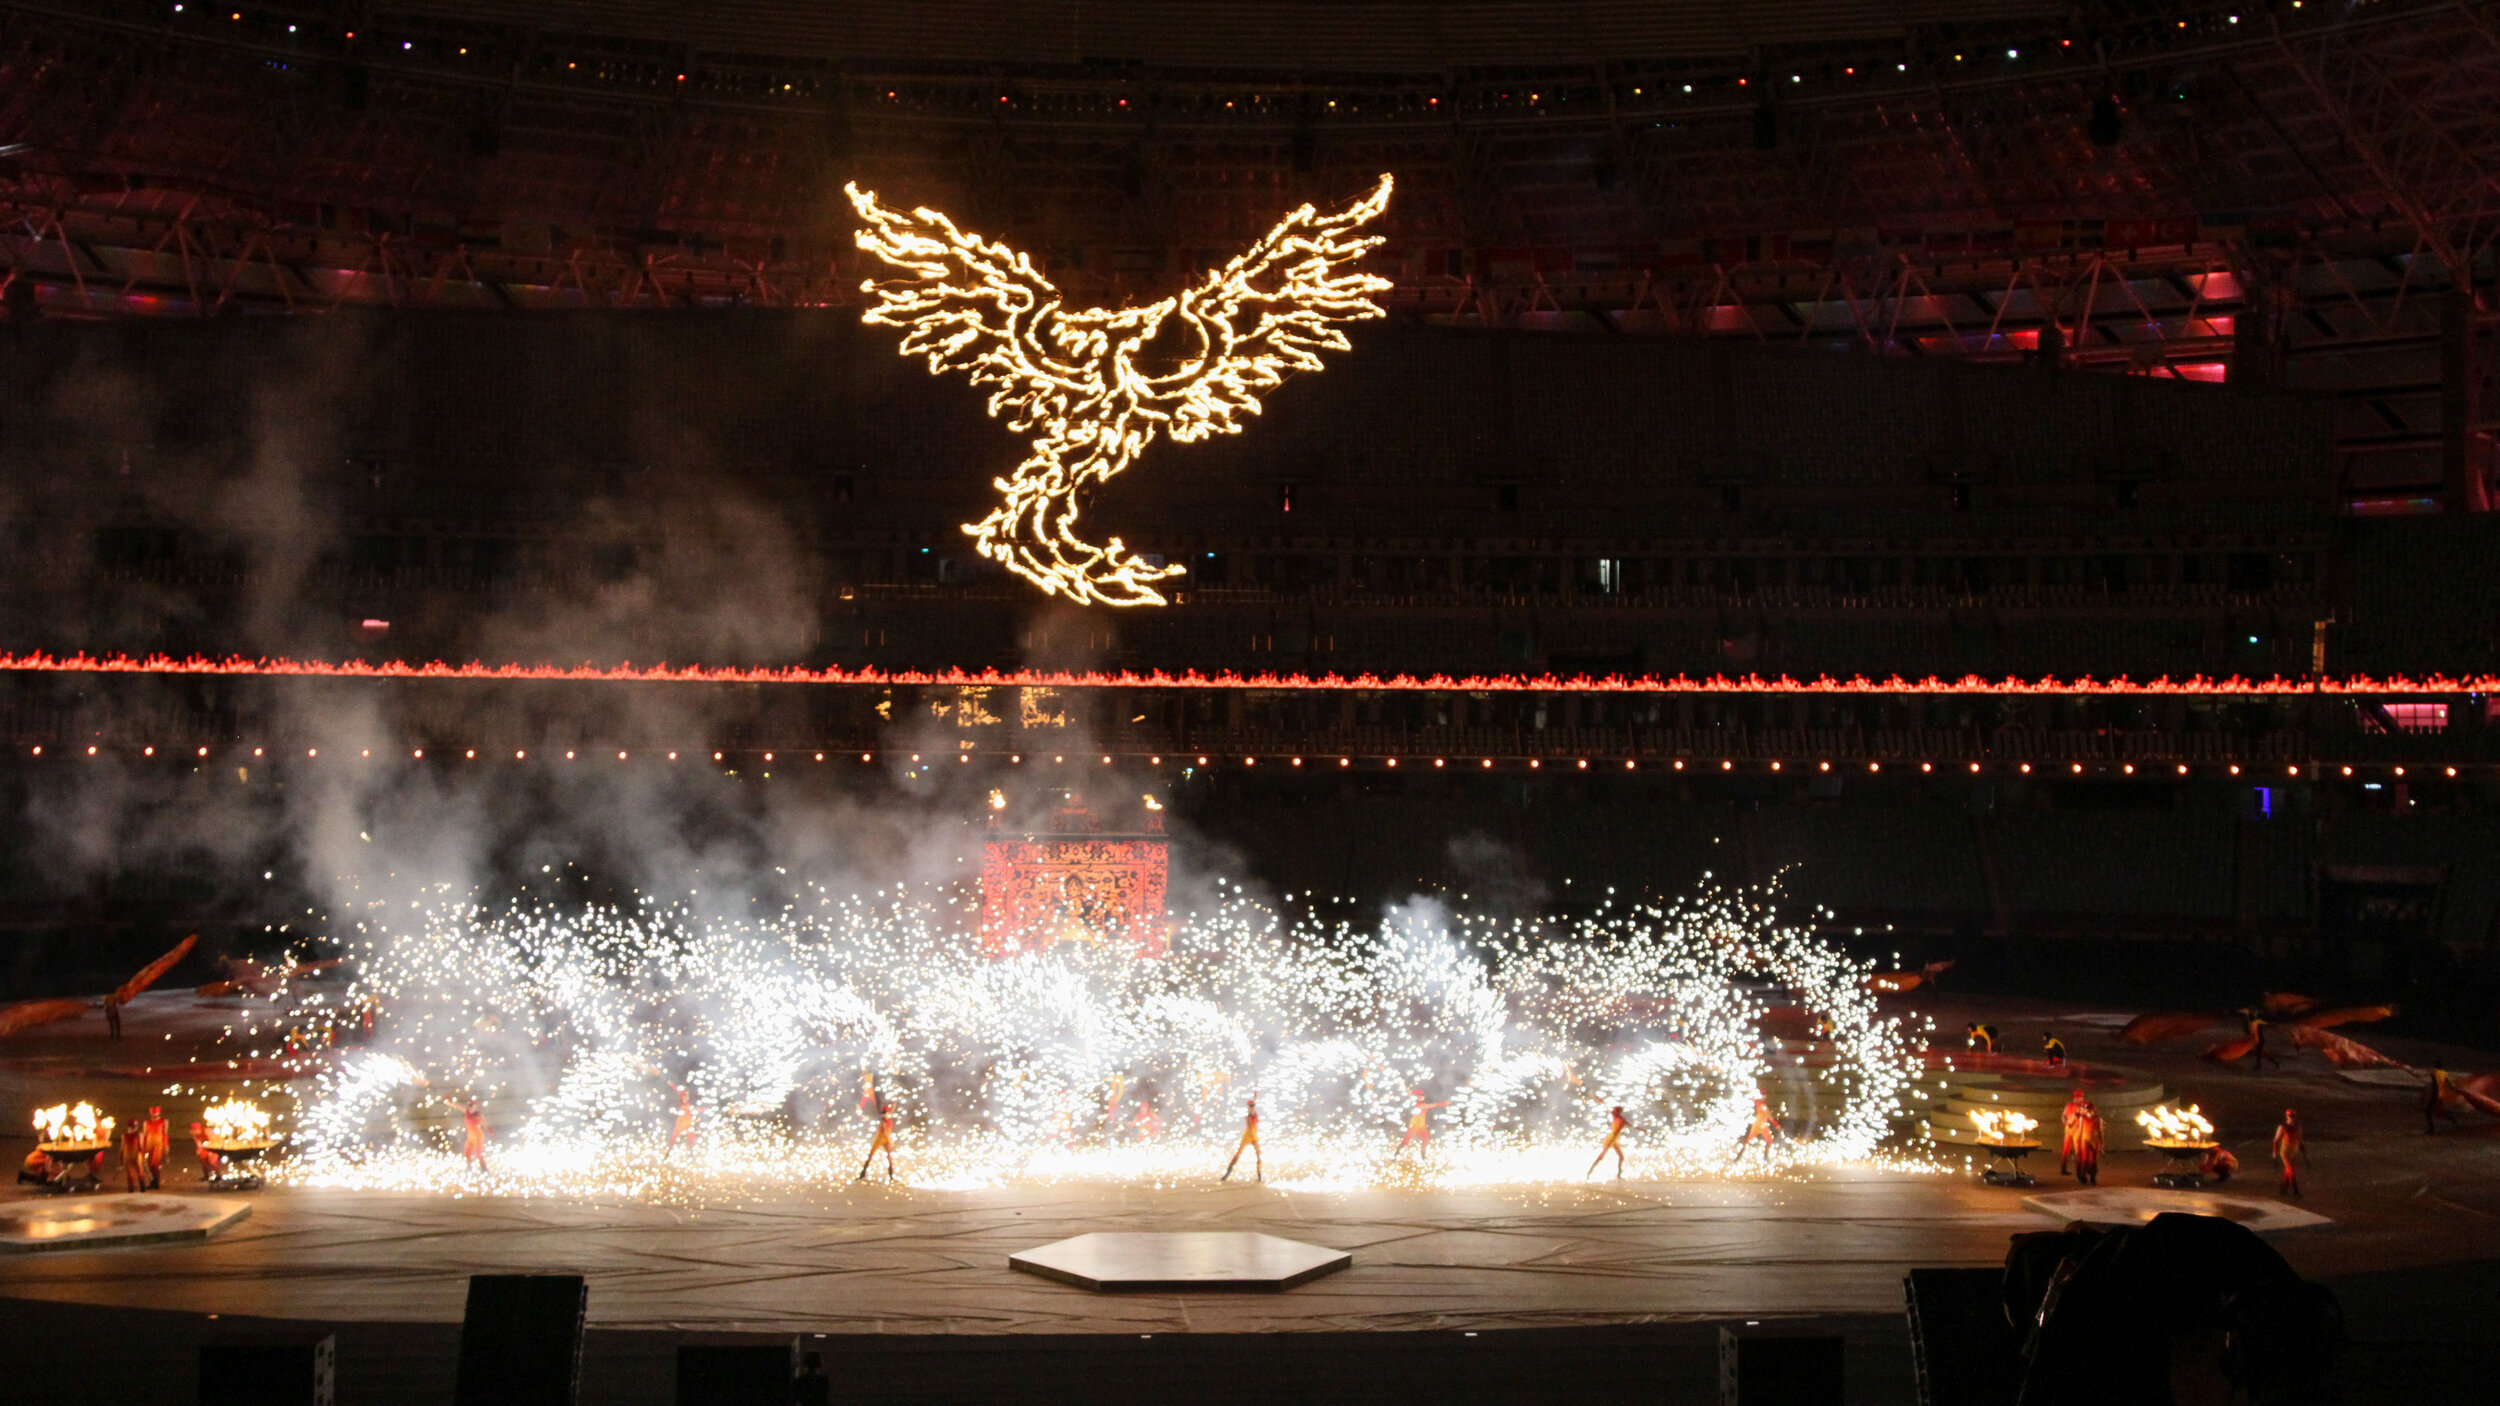 Dynamischer Pyro Xcess Pyrotechnik Effekt, 1. Europaspiele Schlusszeremonie, Baku Stadium, Aserbaidschan